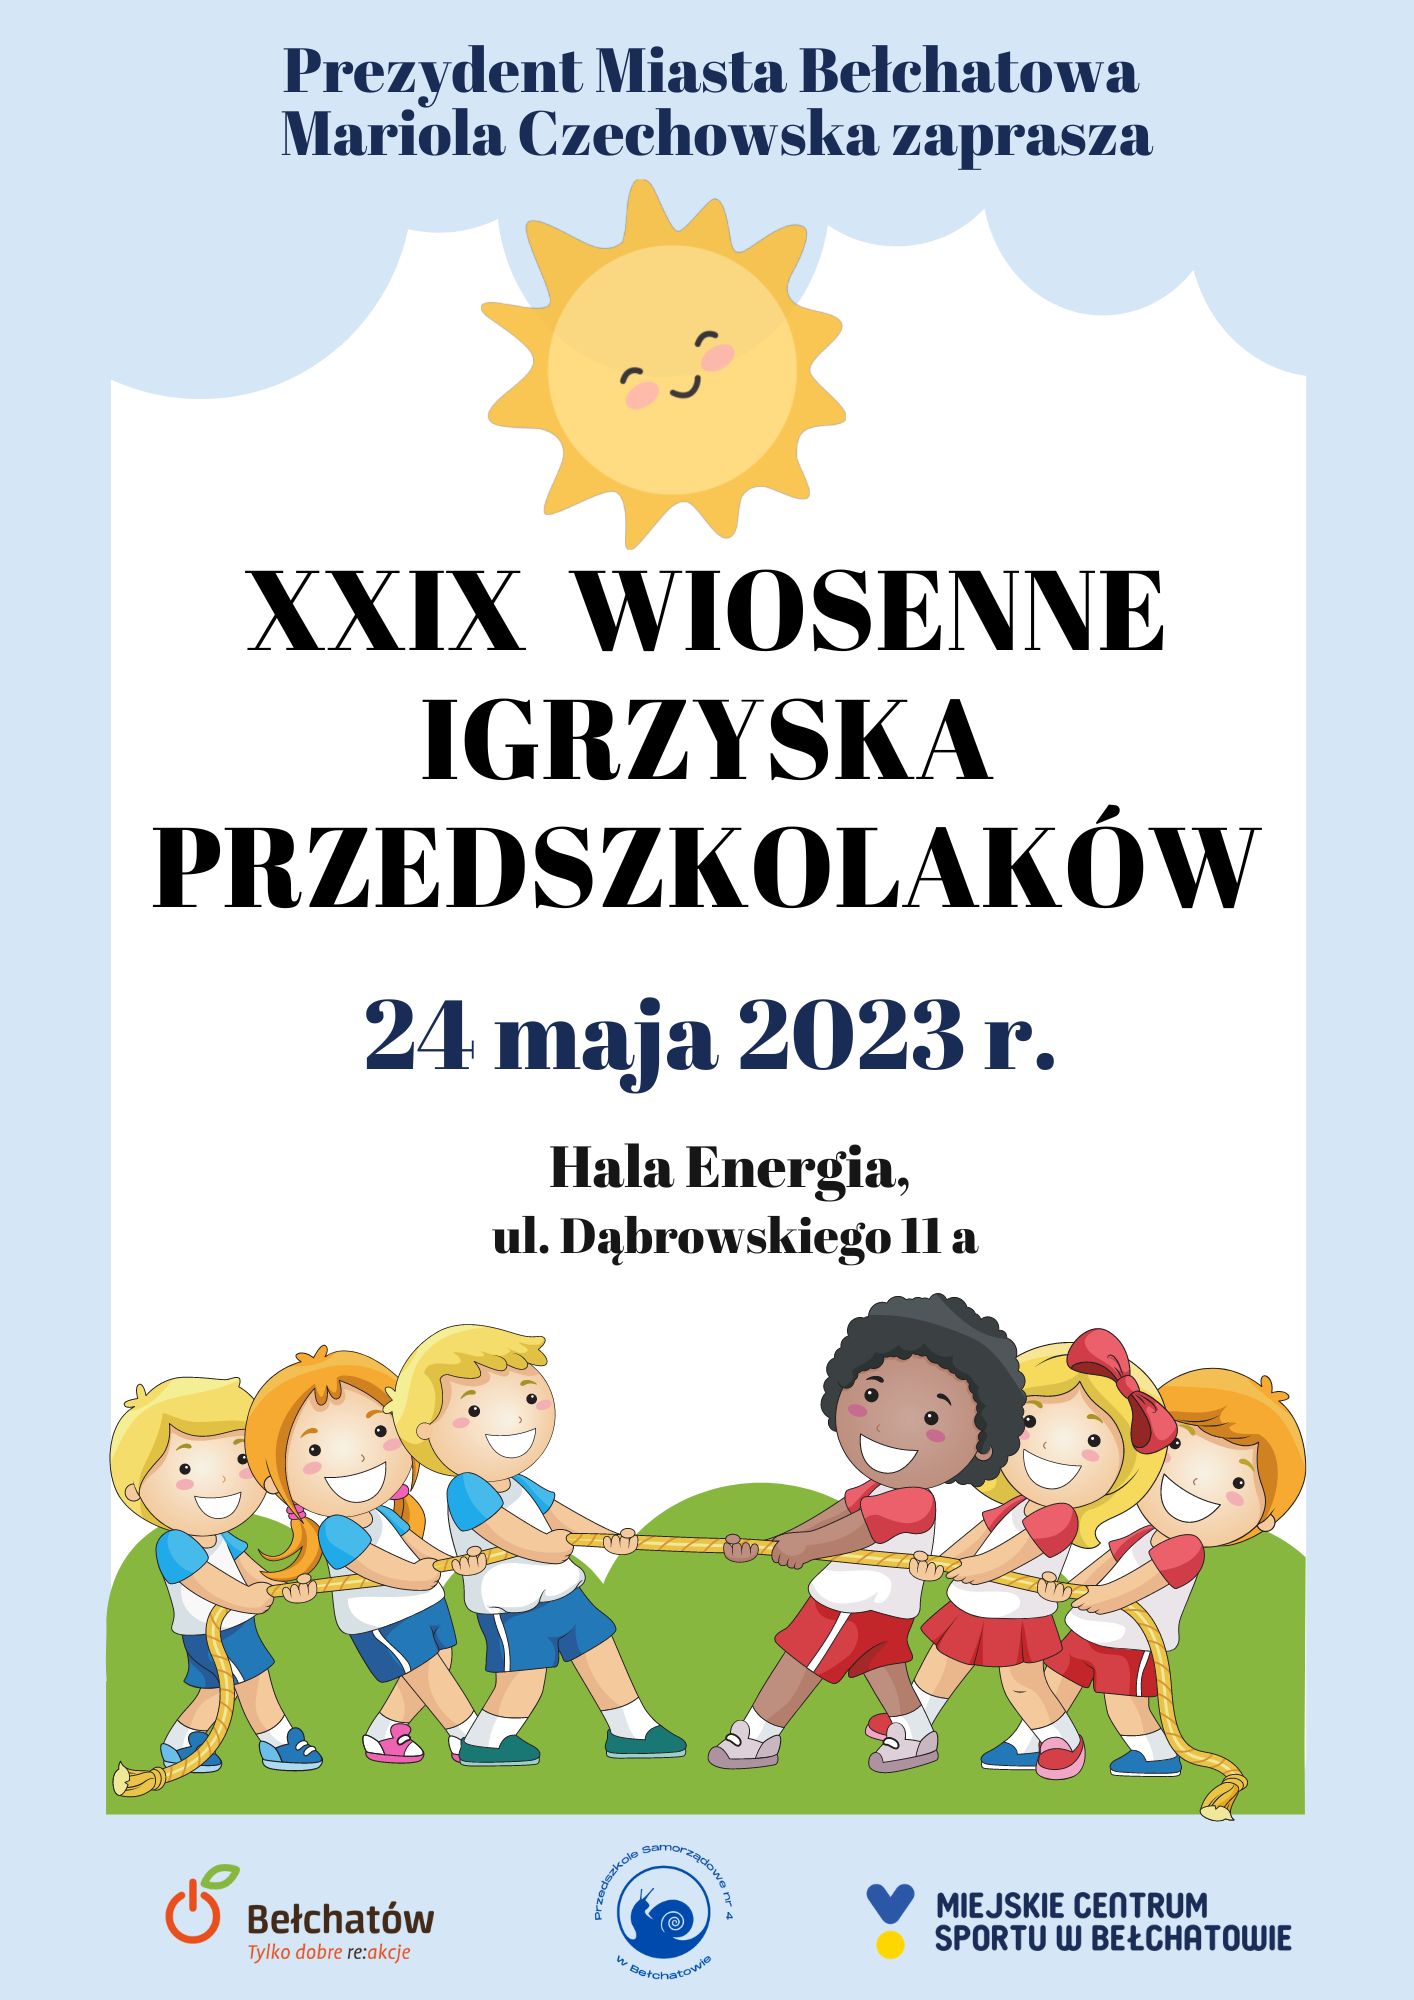 Plakat promujący XXIX Wiosenne Igrzyska Przedszkolaków